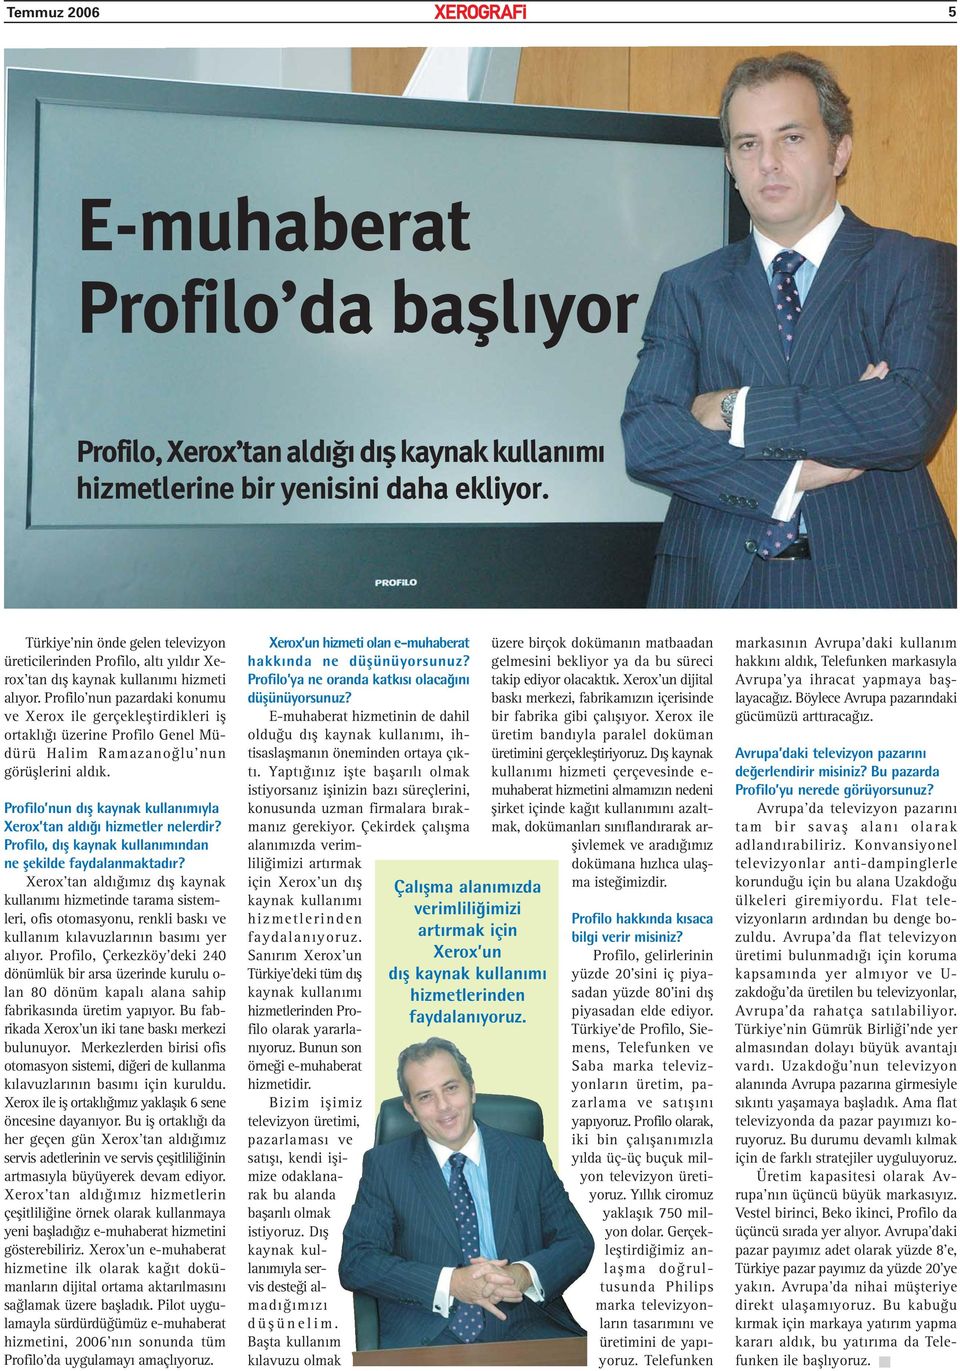 Profilo nun pazardaki konumu ve Xerox ile gerçekleştirdikleri iş ortaklığı üzerine Profilo Genel Müdürü Halim Ramazanoğlu nun görüşlerini aldık.